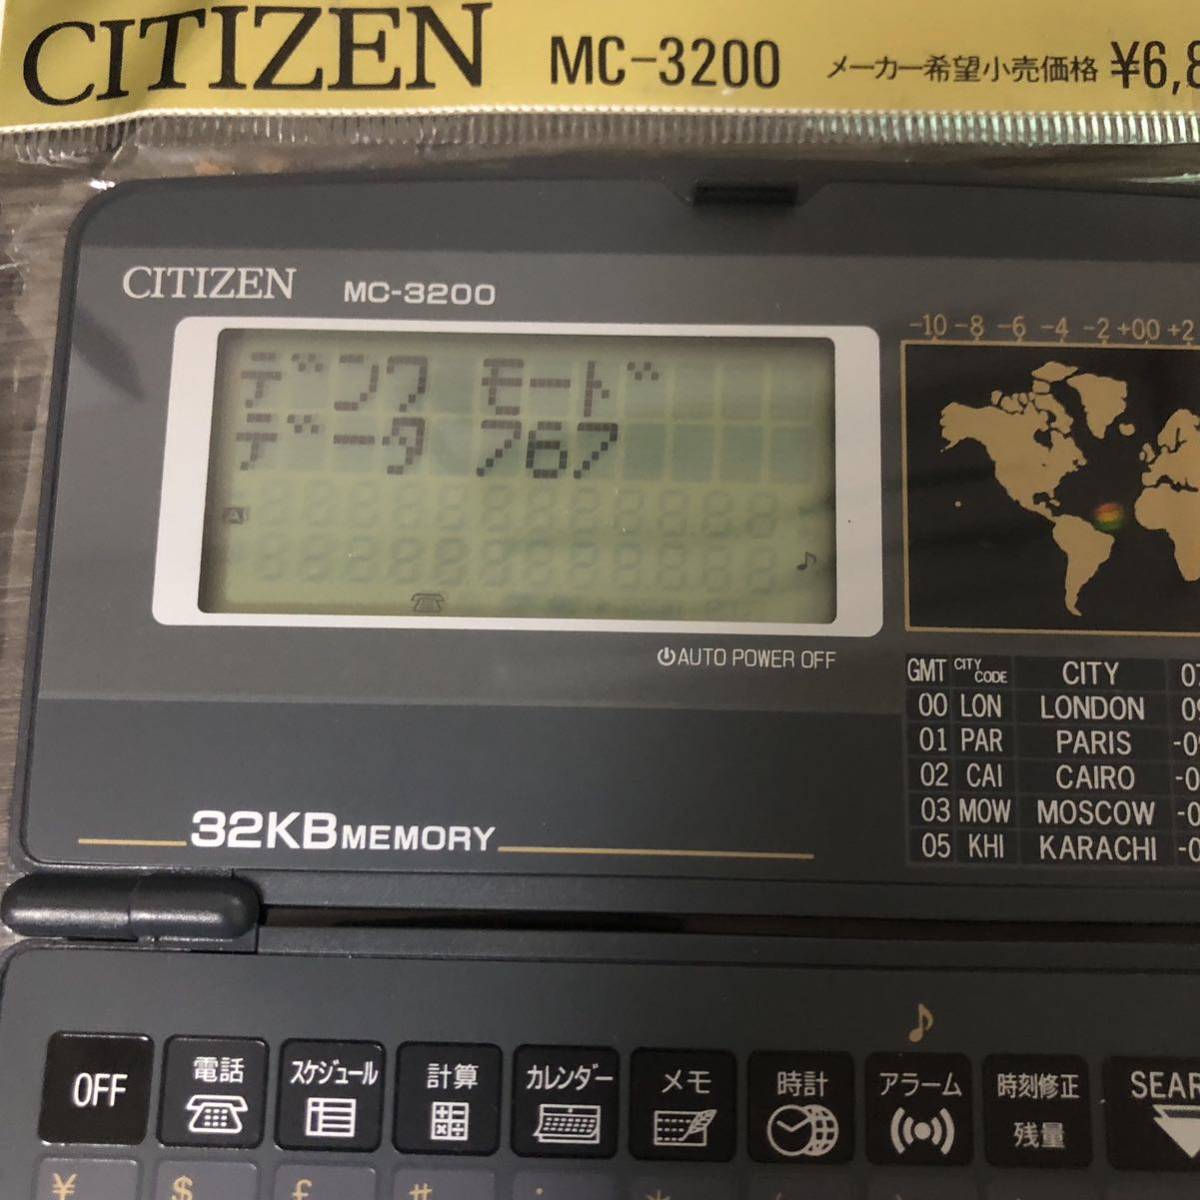 CITIZEN Citizen MC-3200